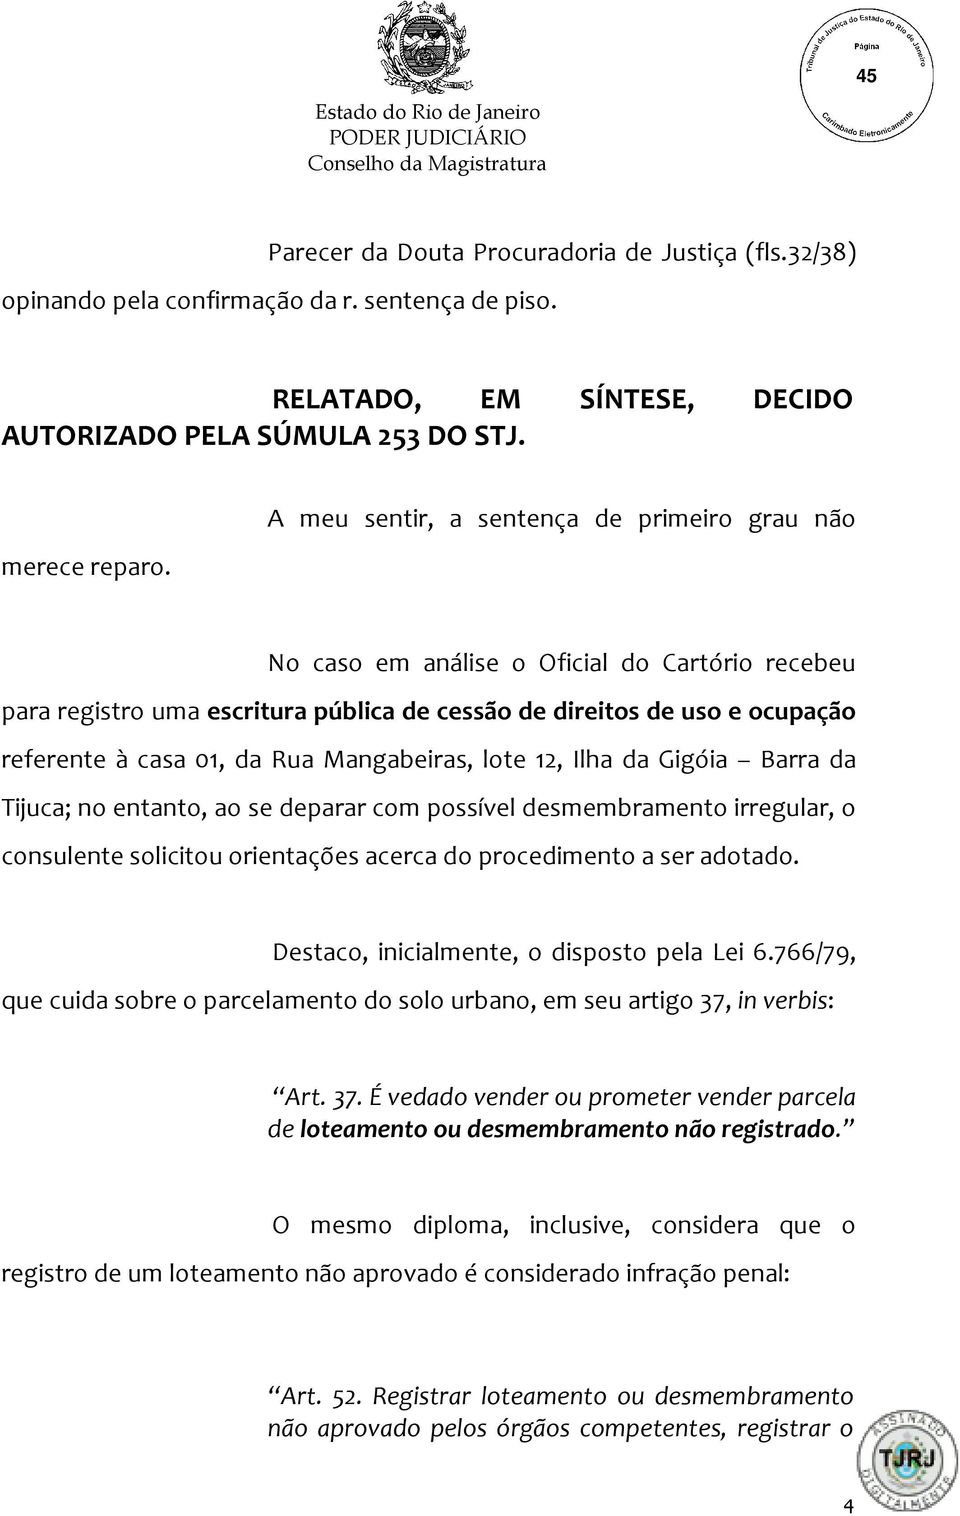 Mangabeiras, lote 12, Ilha da Gigóia Barra da Tijuca; no entanto, ao se deparar com possível desmembramento irregular, o consulente solicitou orientações acerca do procedimento a ser adotado.